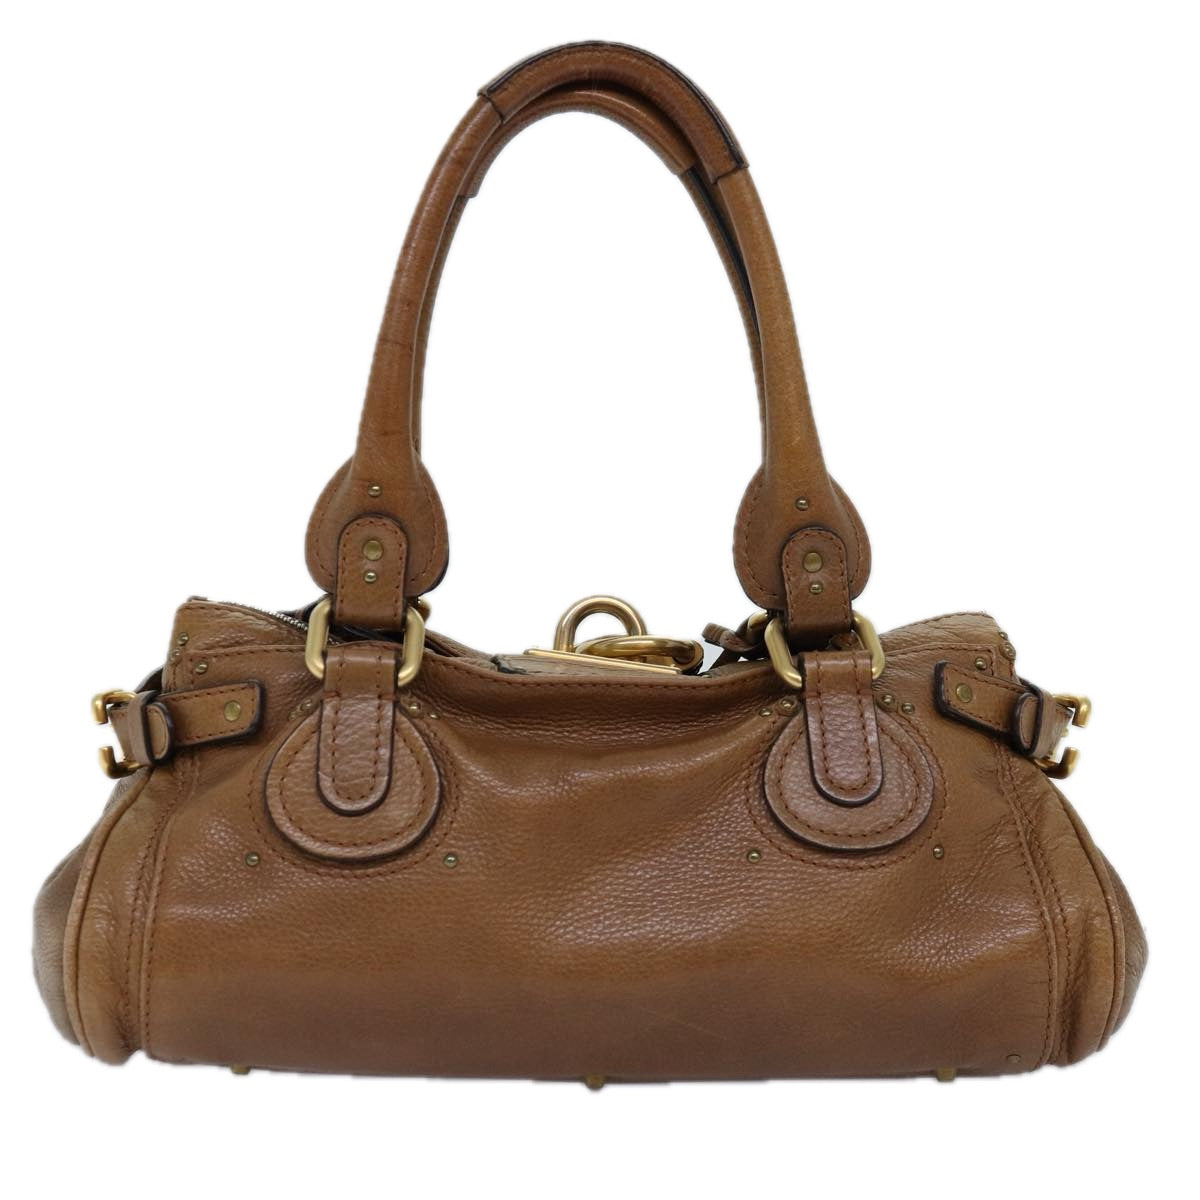 Chloe Paddington Hand Bag Leather Brown Auth am6253 - 0